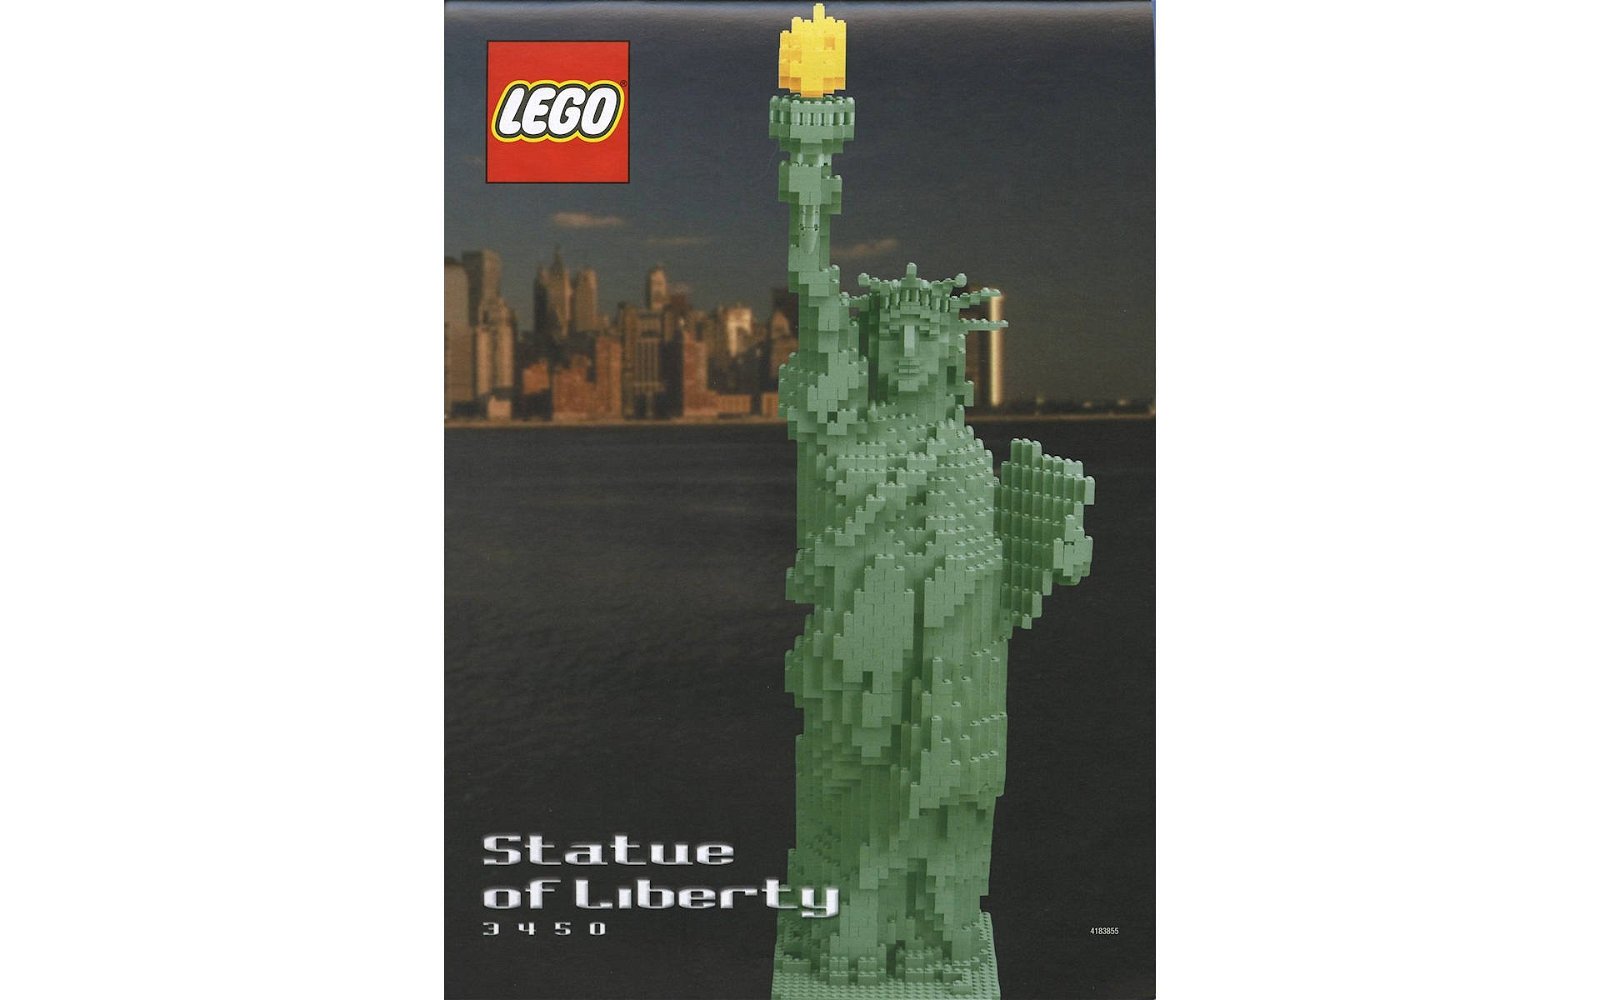 LEGO: tutti i set ispirati dalla Statua della Libertà - Tom's Hardware